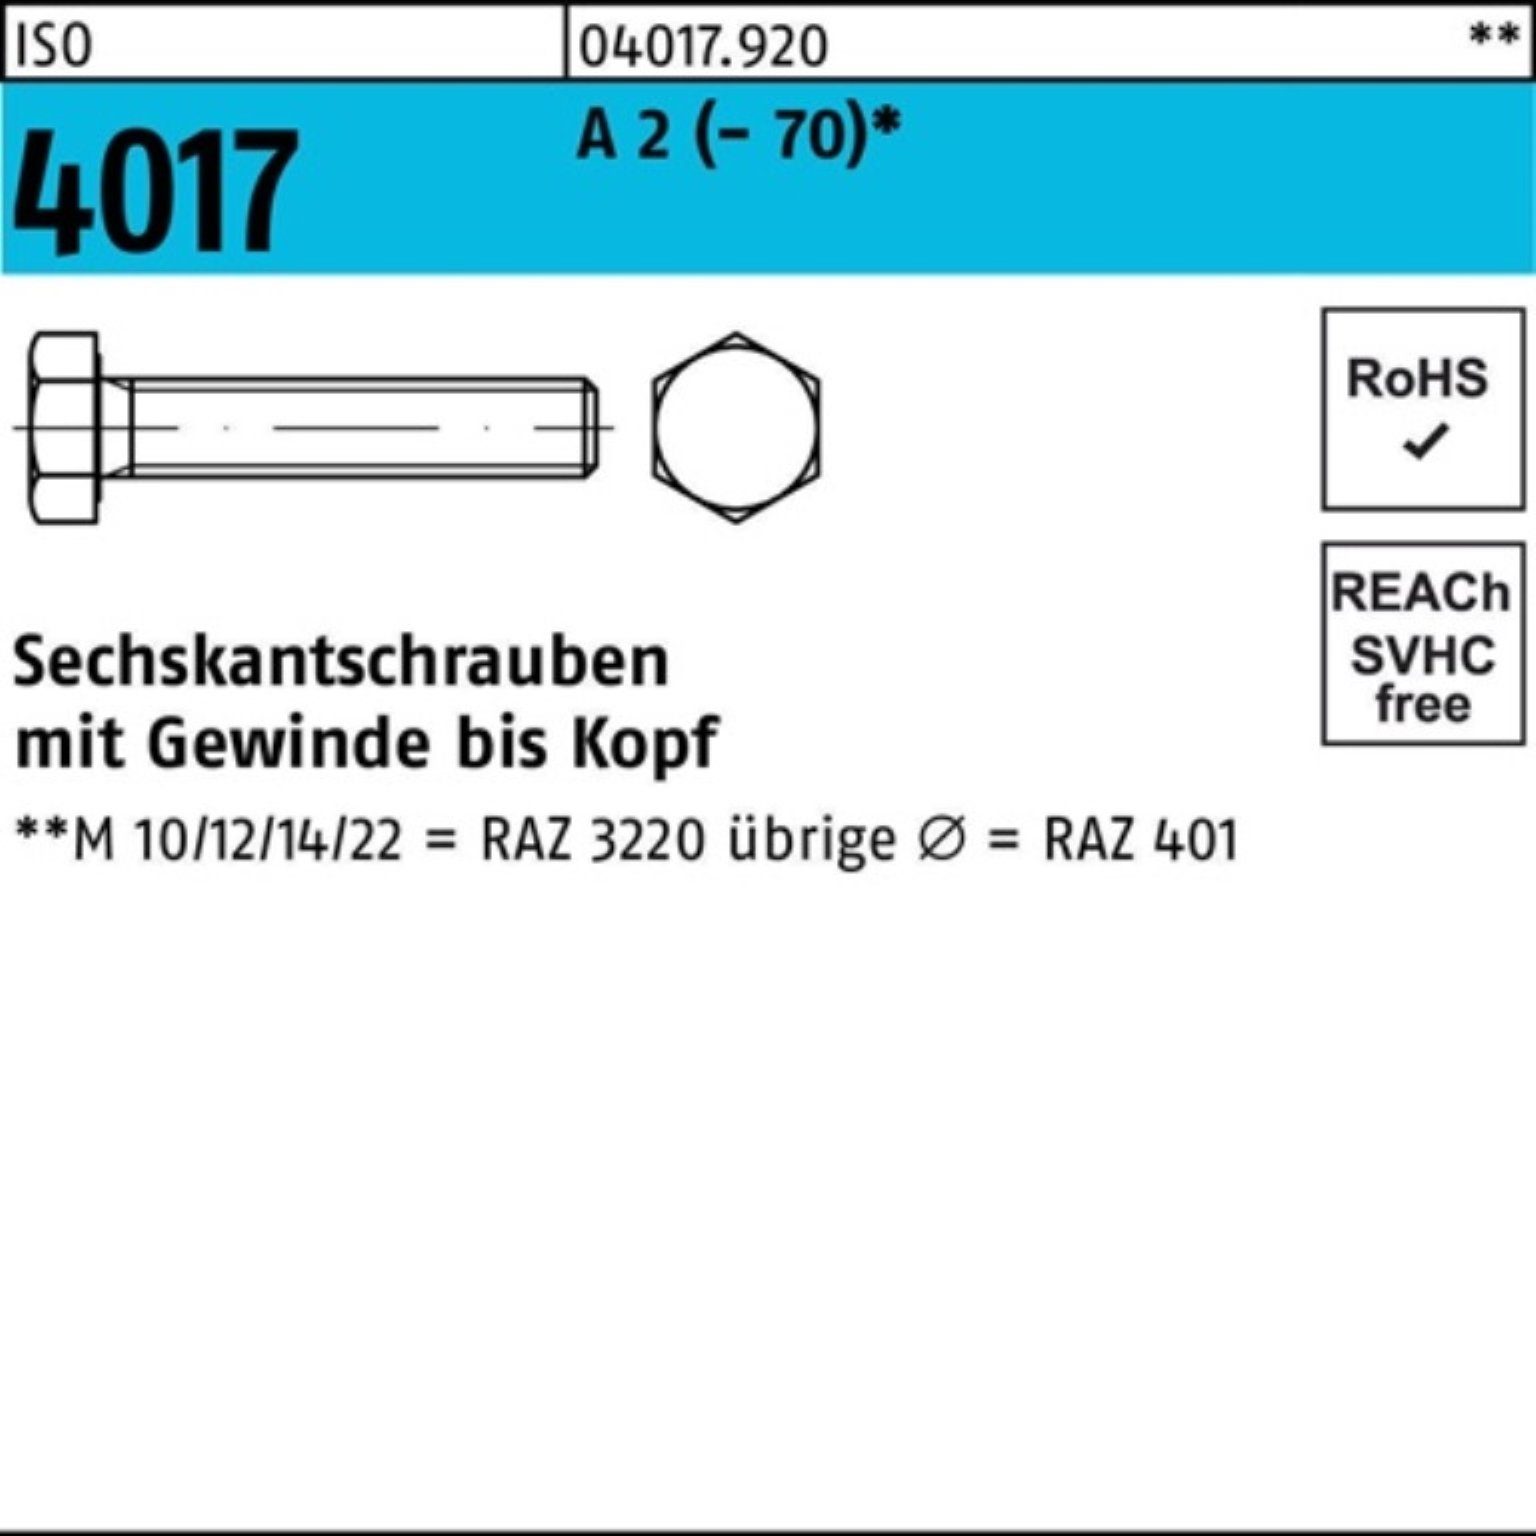 Sechskantschraube 50 VG Sechskantschraube M8x A (70) Bufab Pack 4017 200 ISO 2 Stück 100er